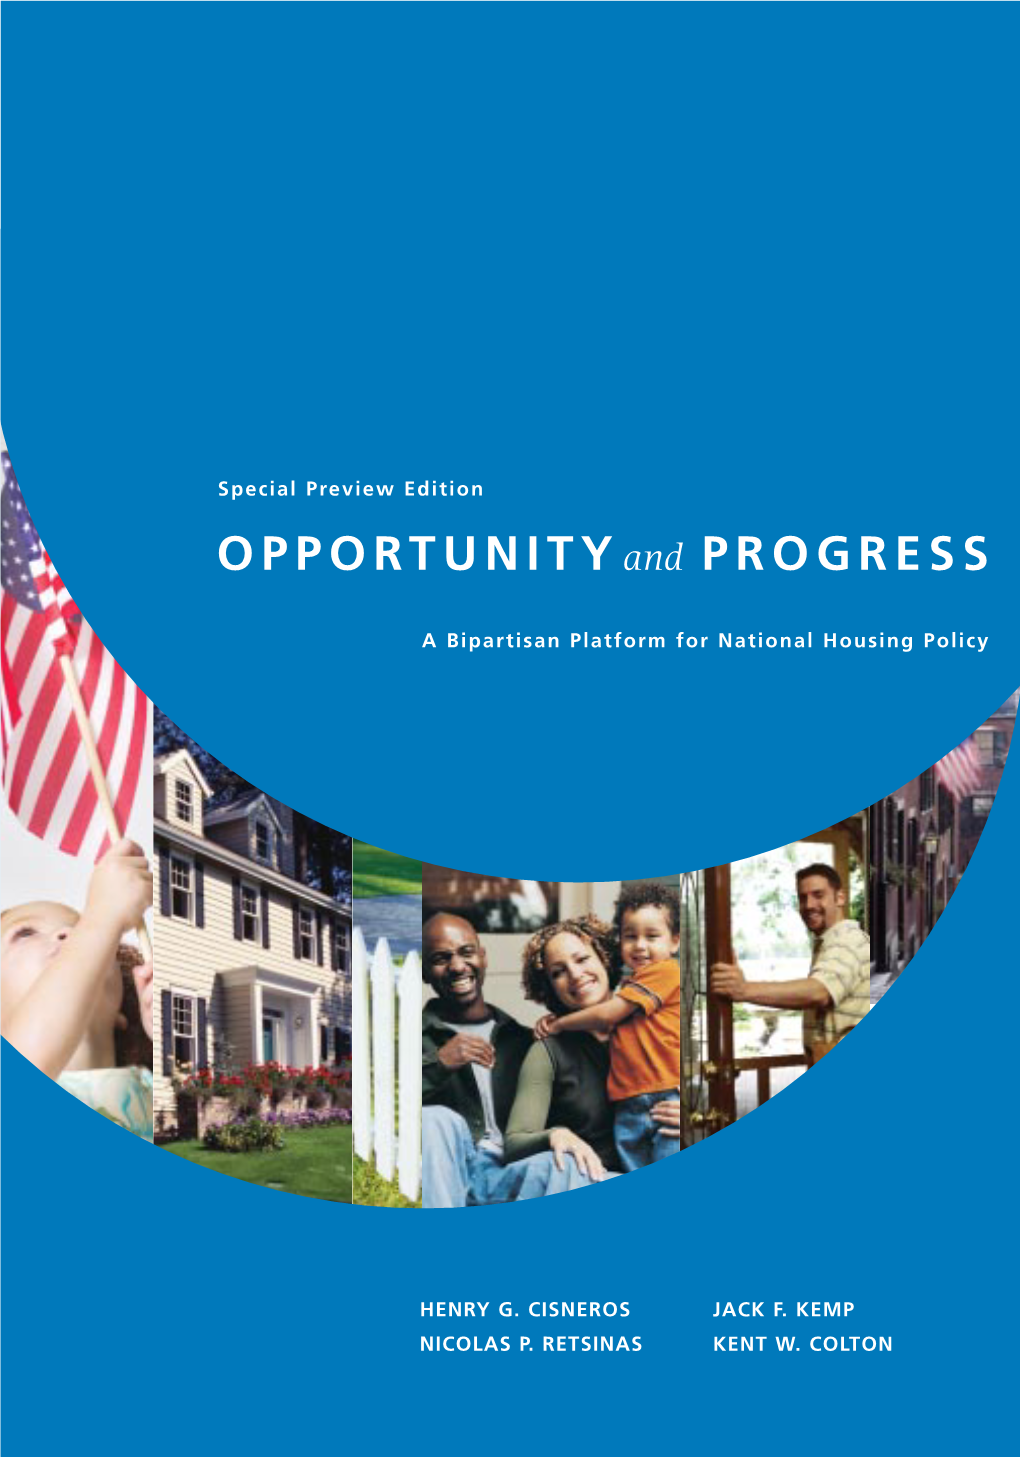 Kemp-Cisneros National Housing Policy Report – September 2004